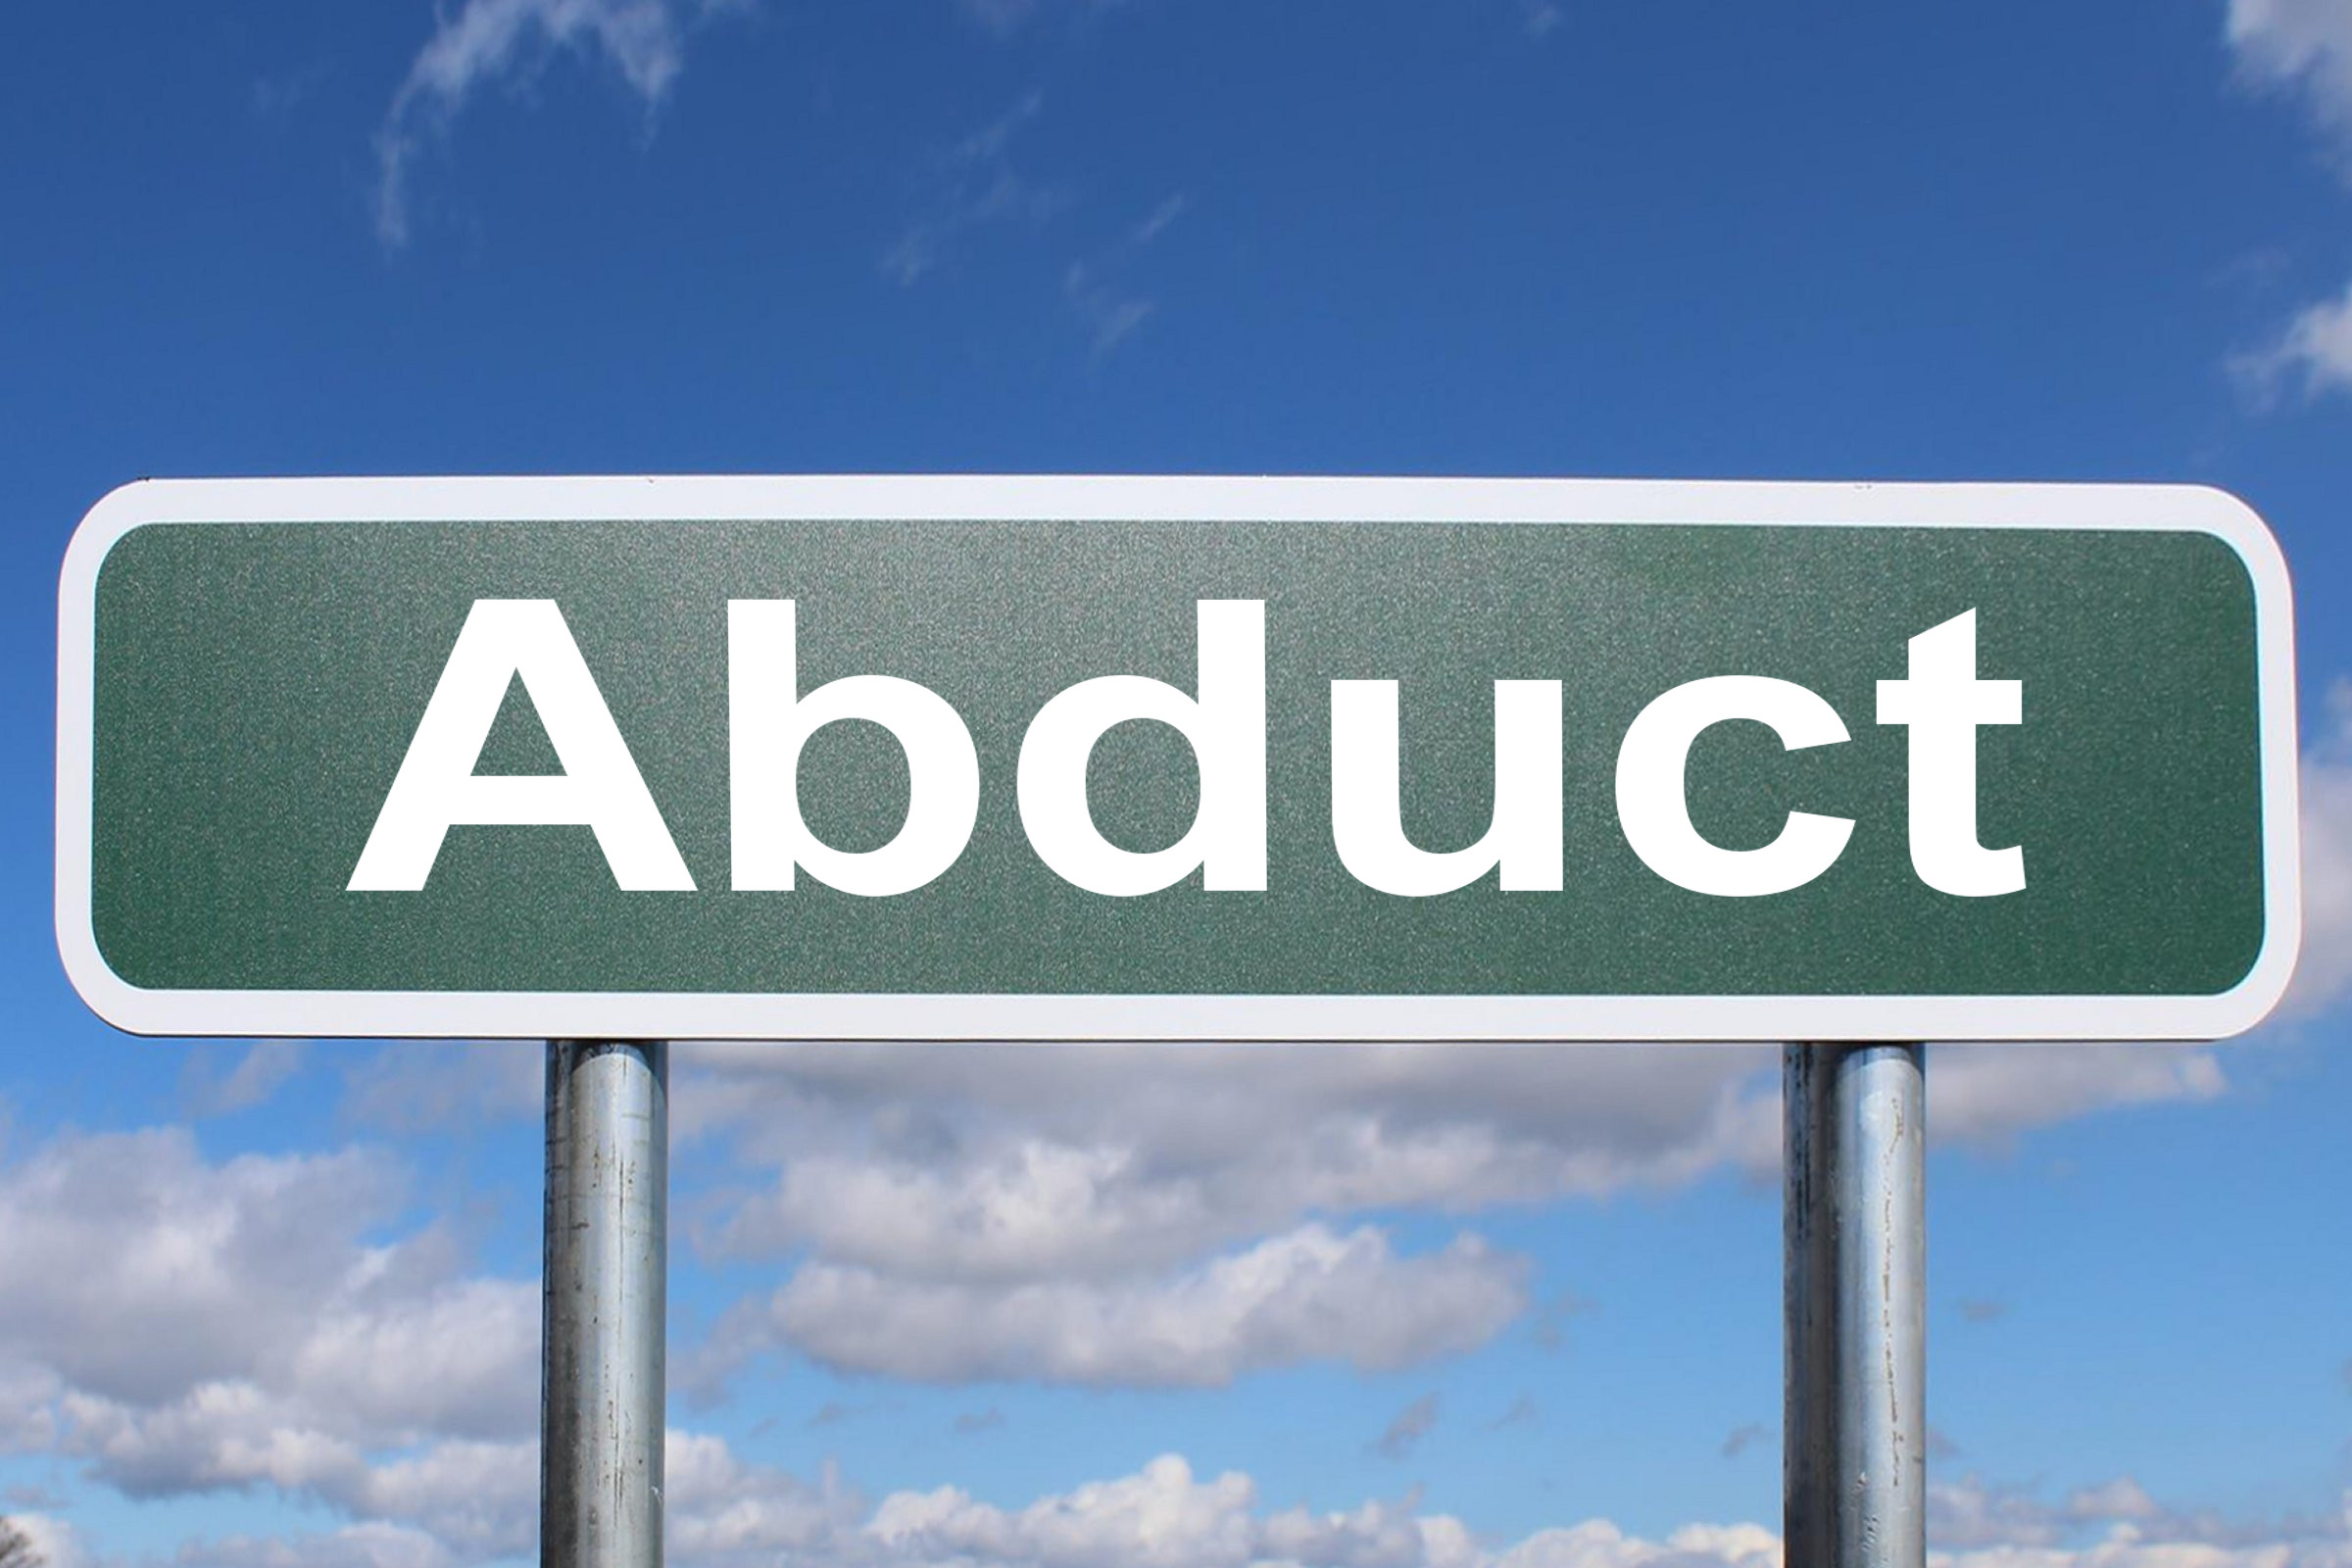 abduct